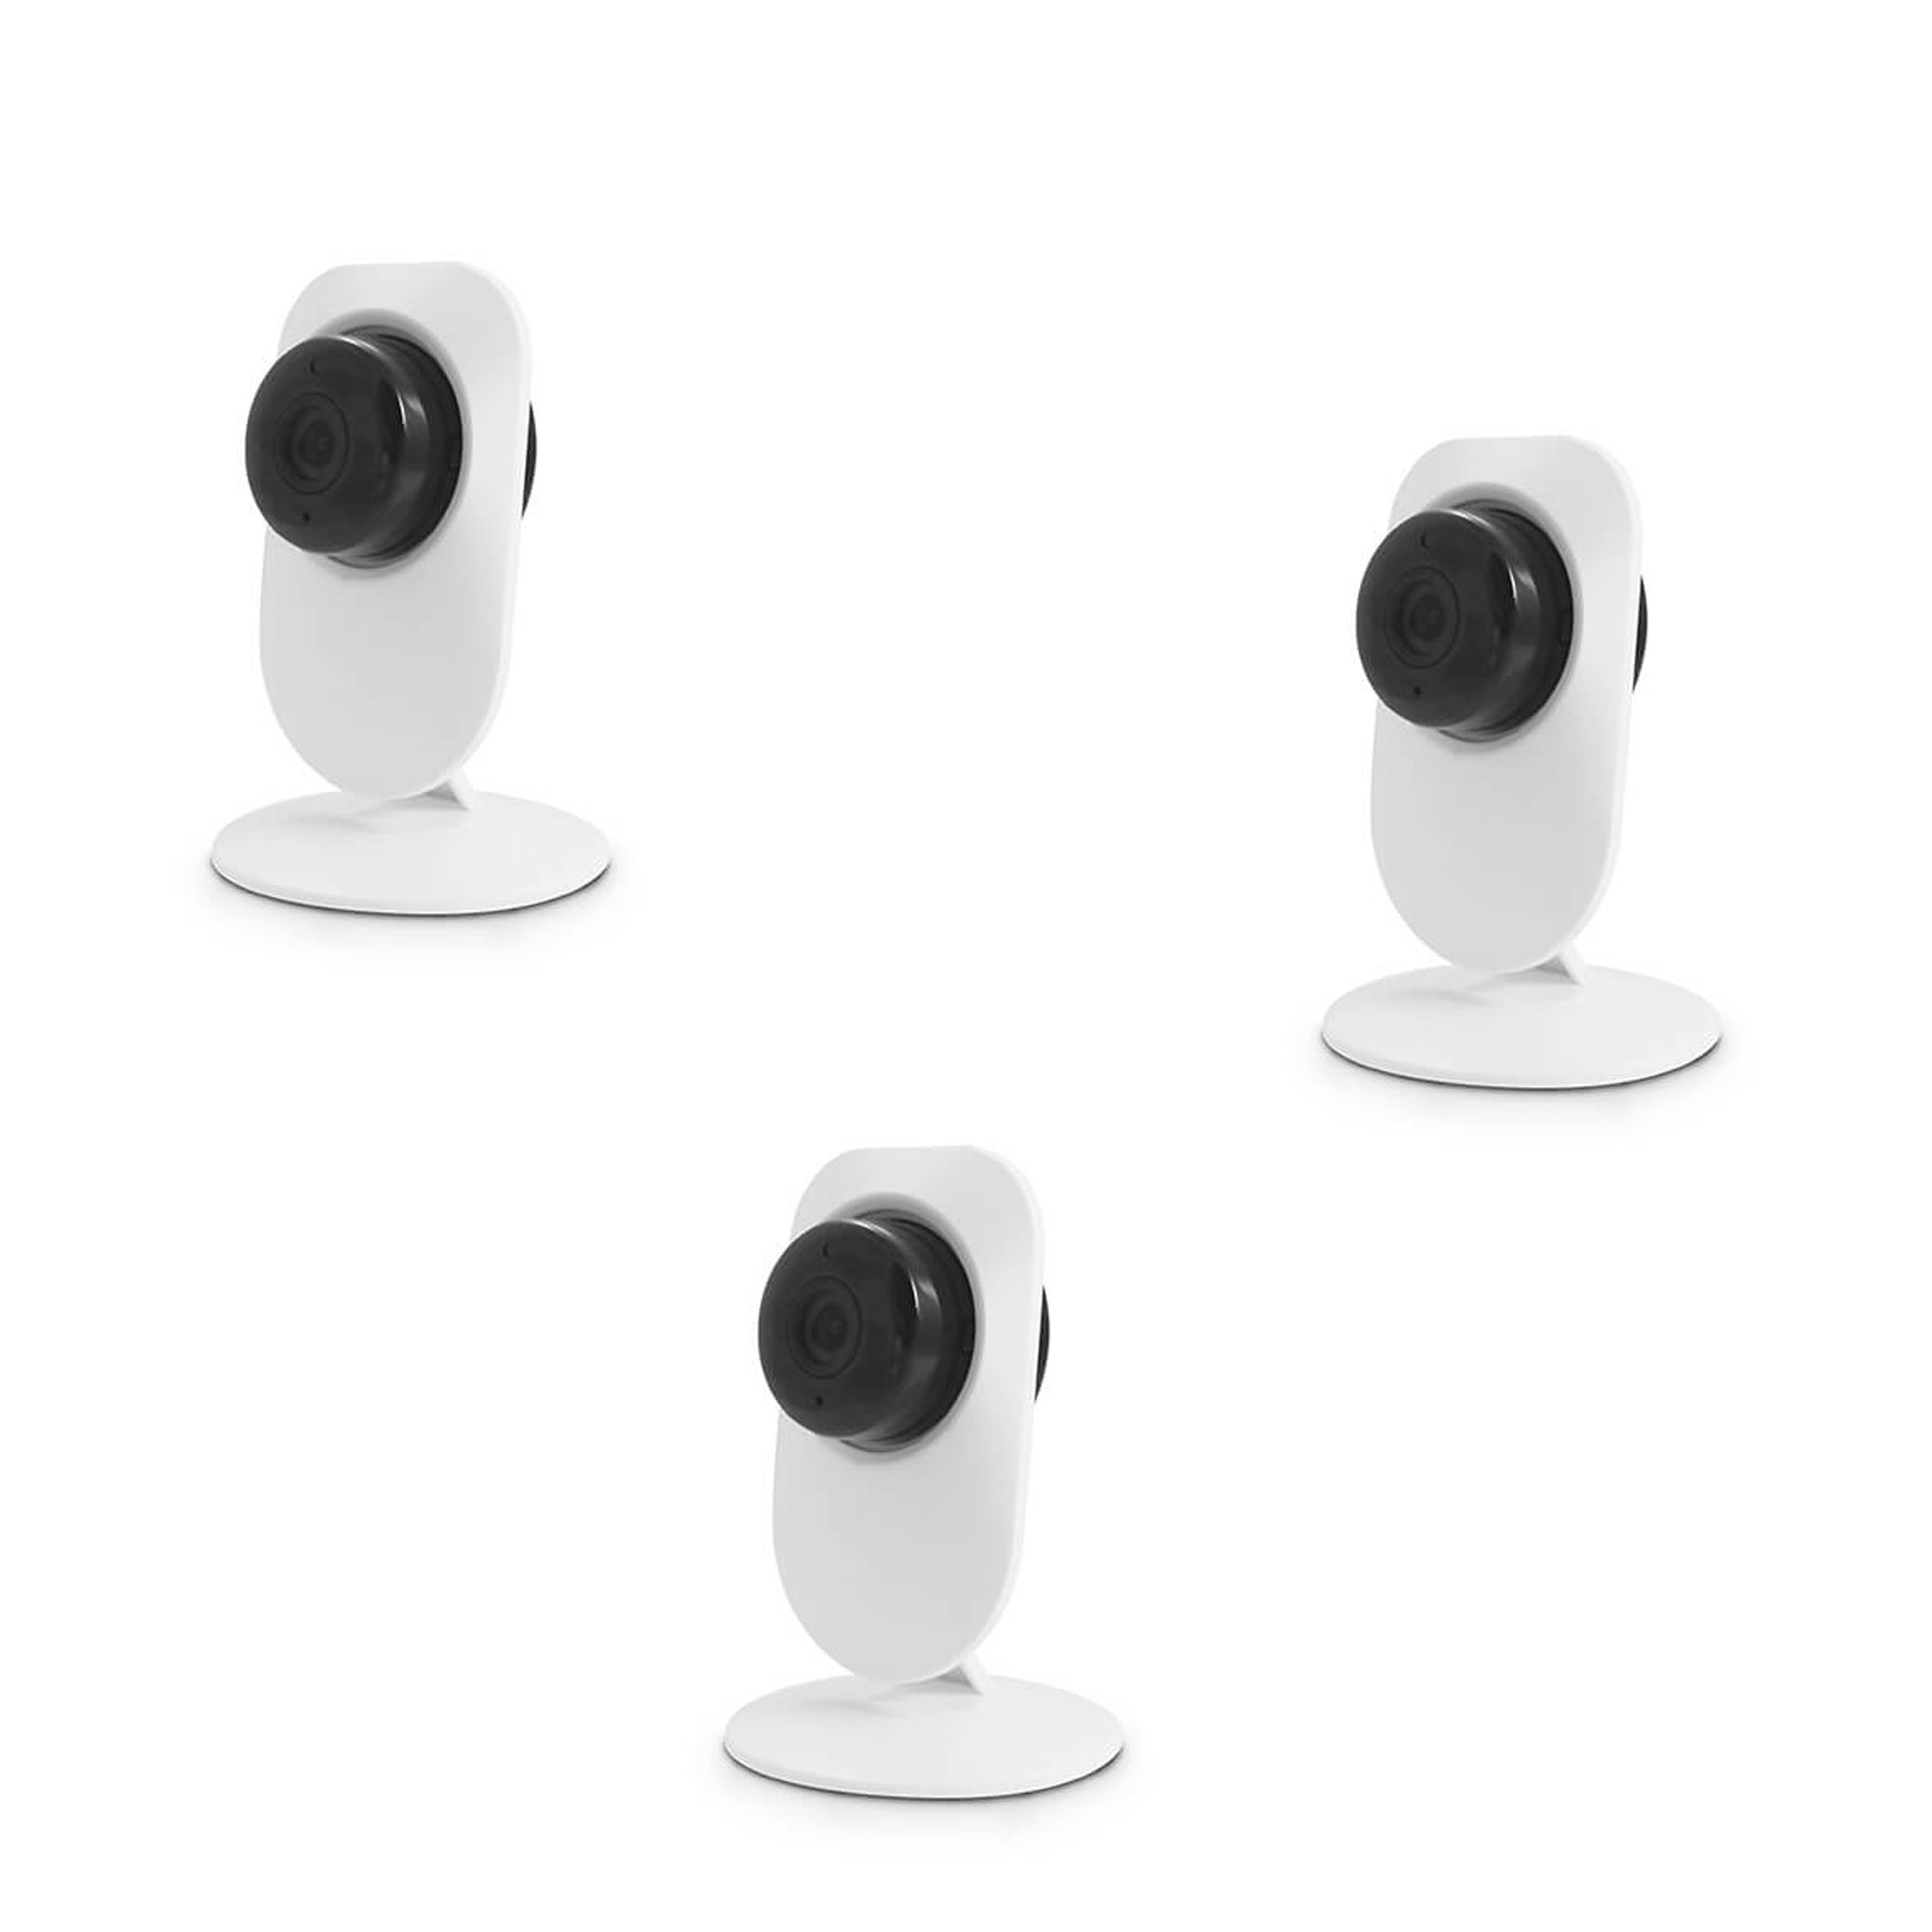 Cette caméra Xiaomi permet de surveiller votre maison pour un prix